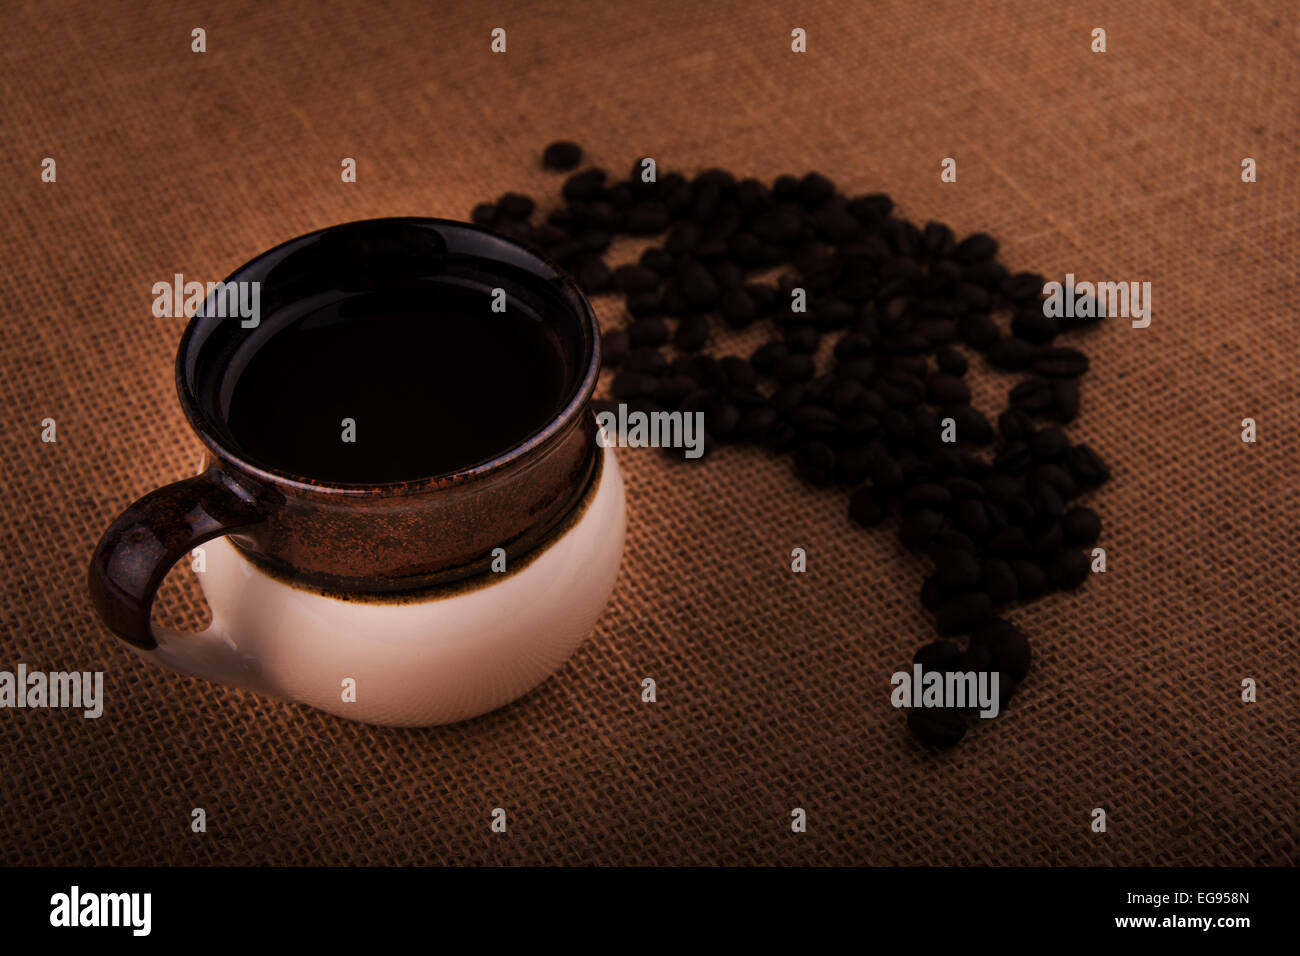 Tasse de café avec café en grains sur un sac de jute, droit aux teintes chaleureuses avec vignette Banque D'Images